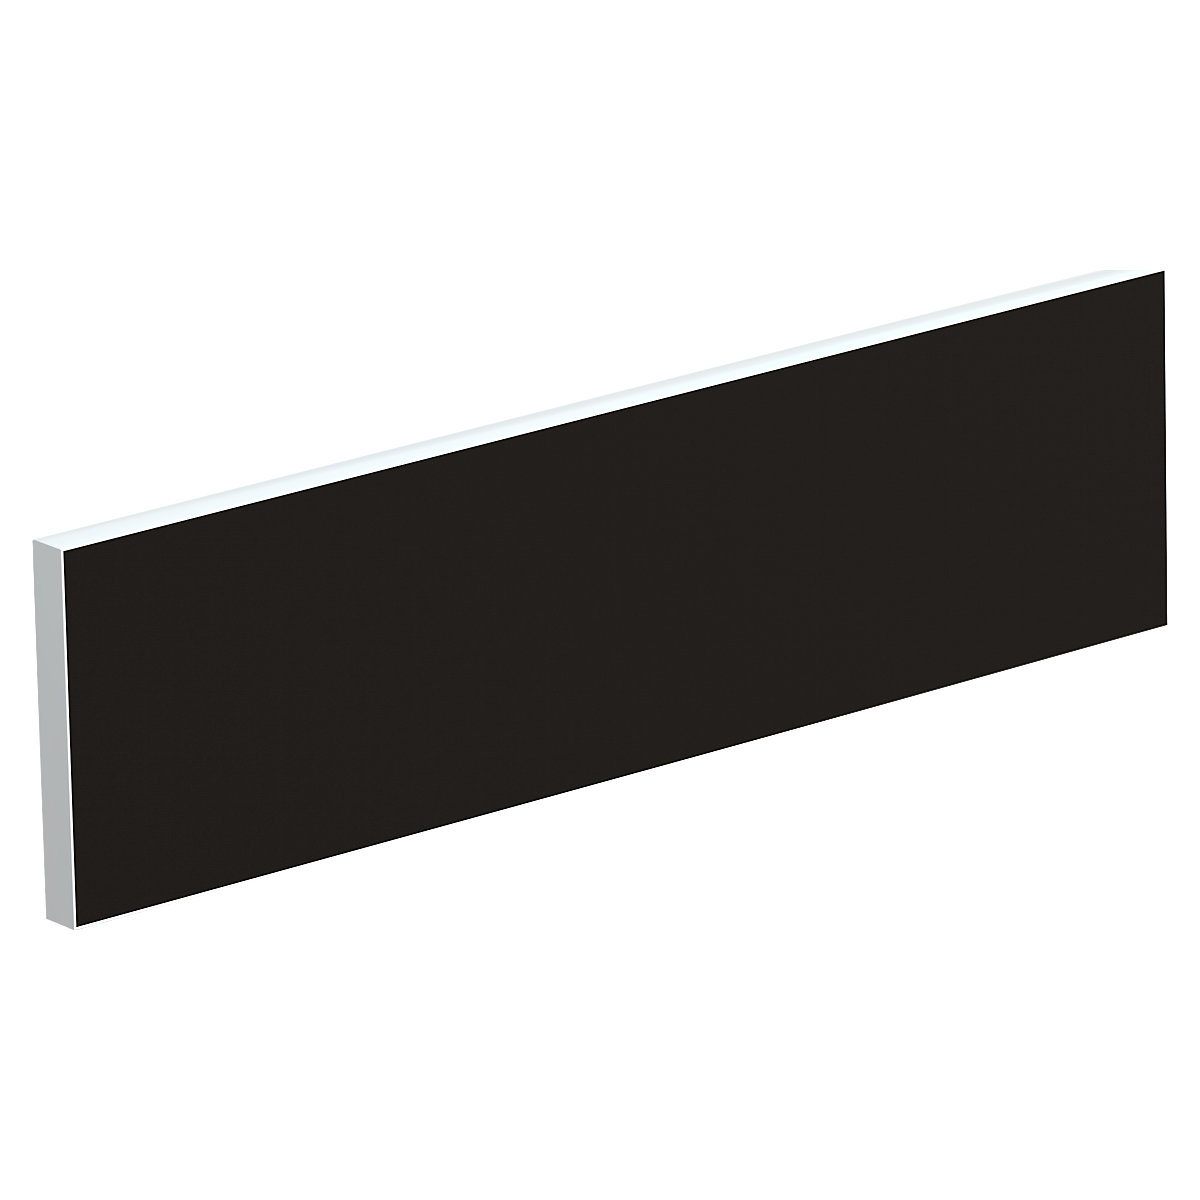 Tischtrennwand für Teamschreibtische, Breite 1600 mm, Bezug schwarz-4